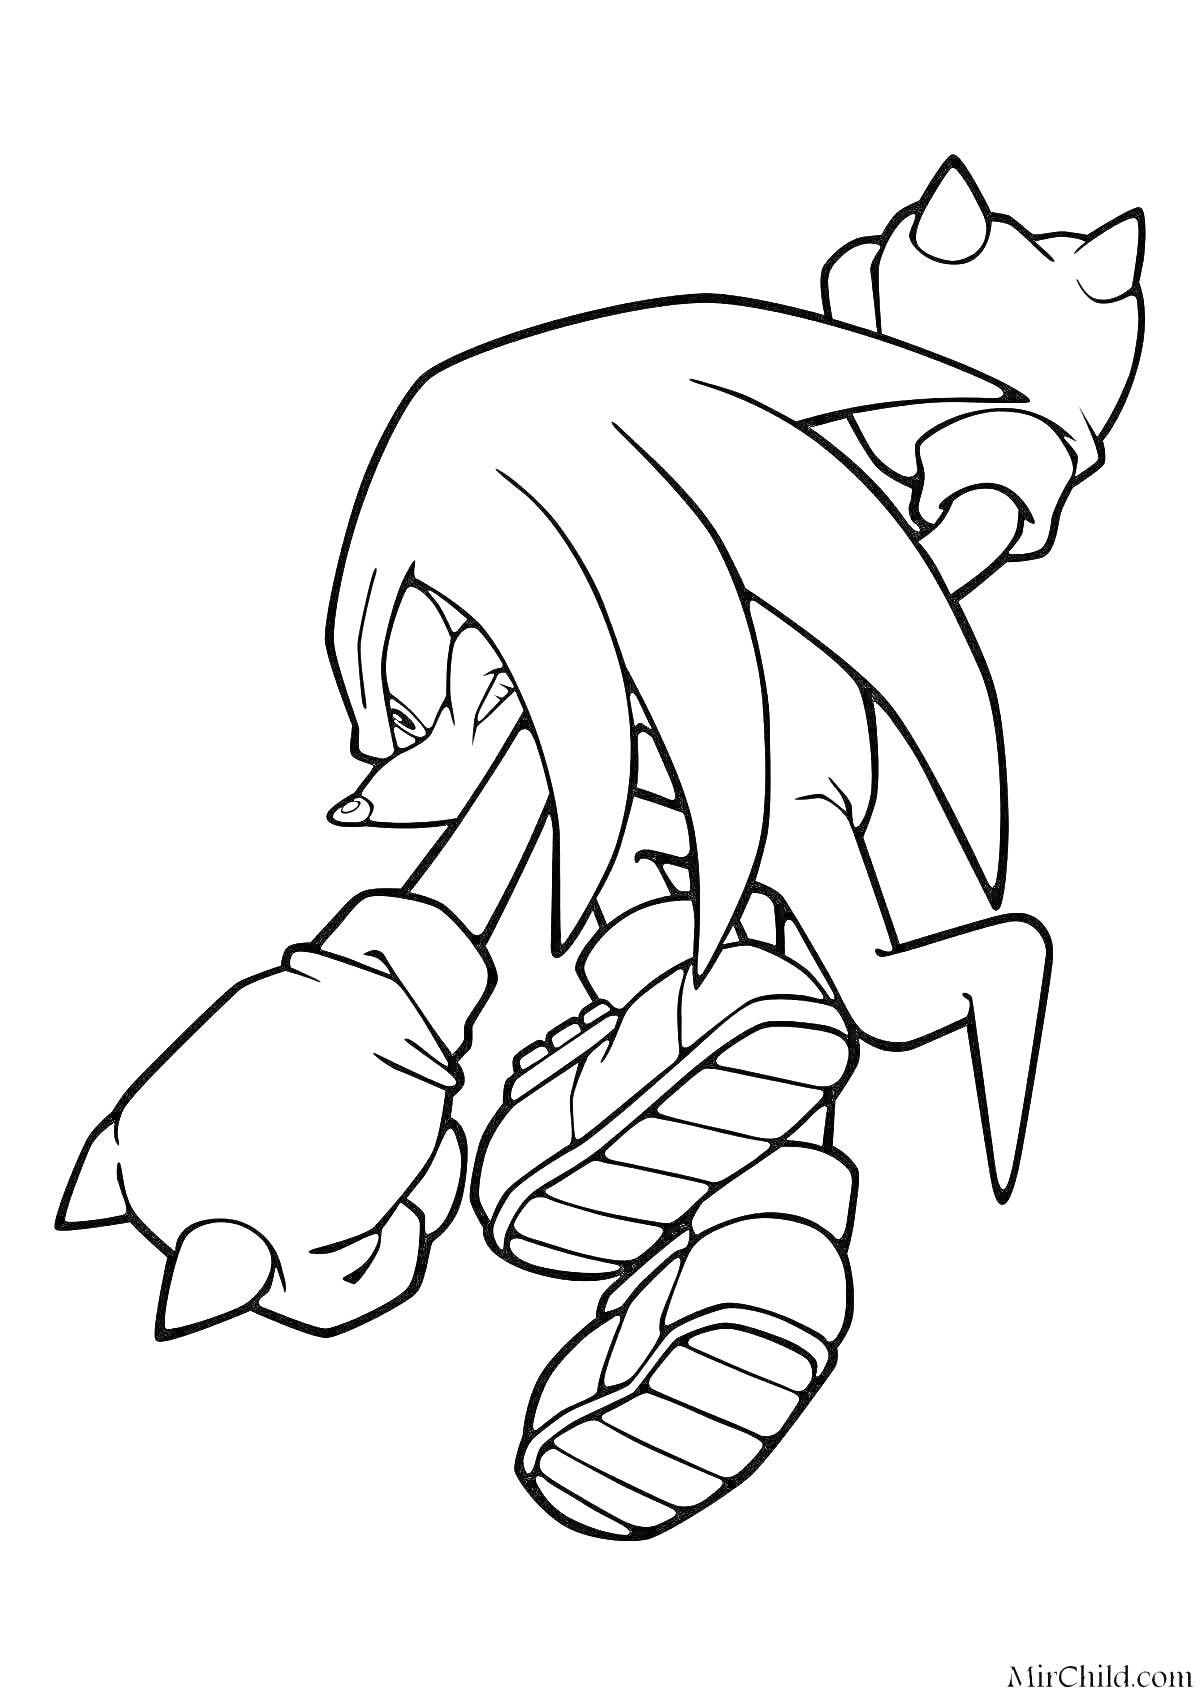 Раскраска Наклз, один из персонажей из серии Sonic the Hedgehog, в боевой позе